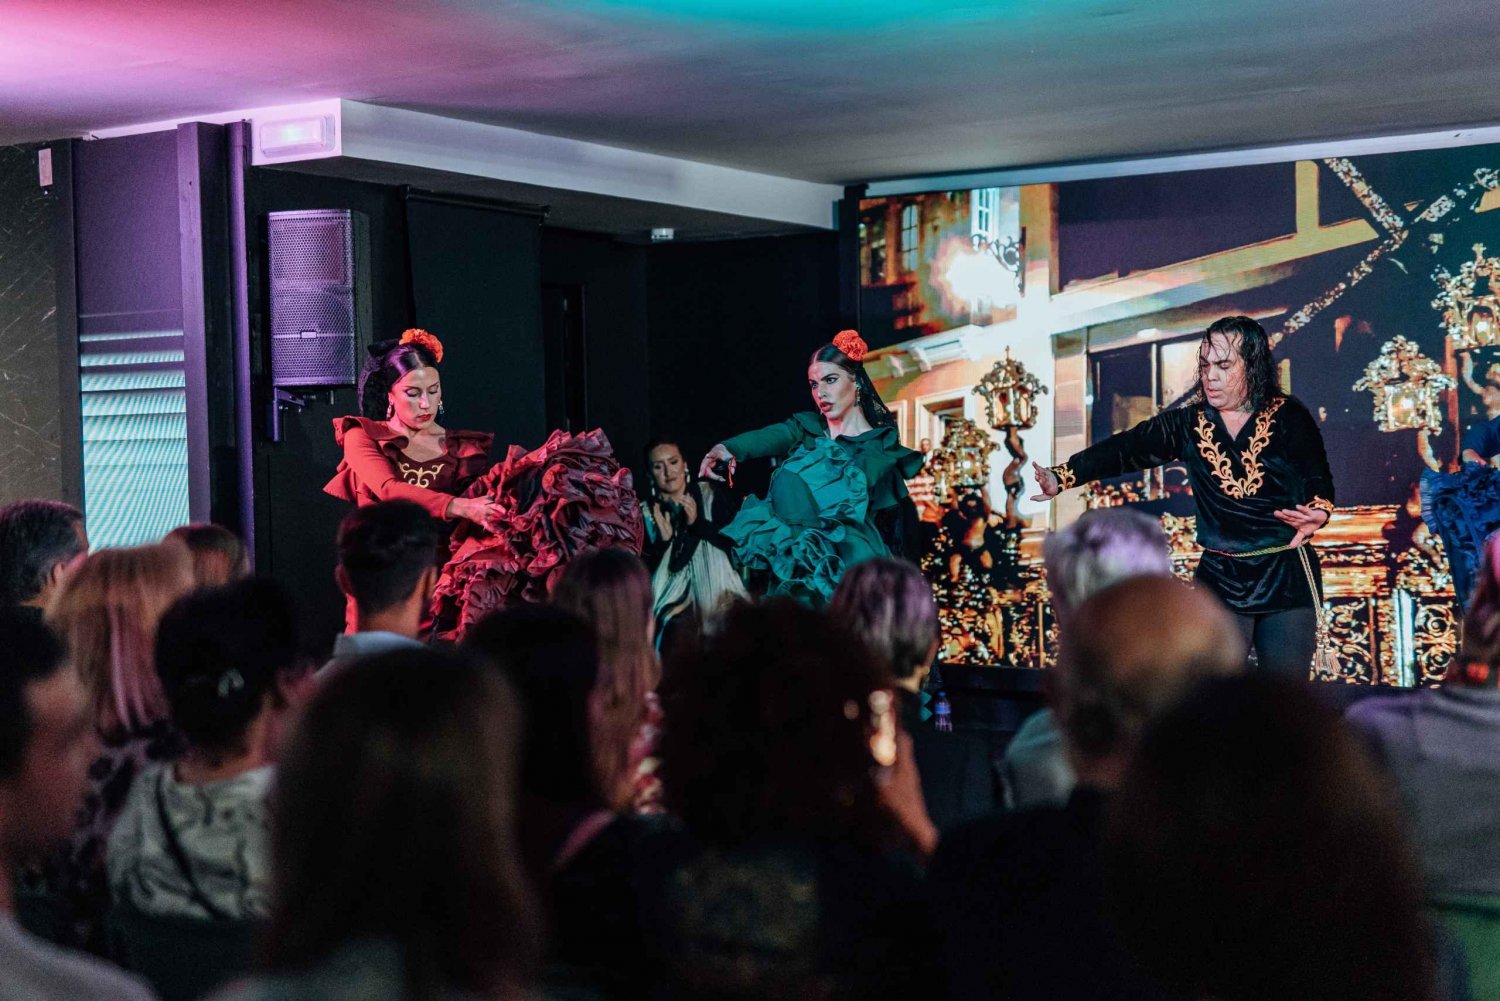 Malaga: Tablao Flamenco Show Antojo & optionales Abendessen